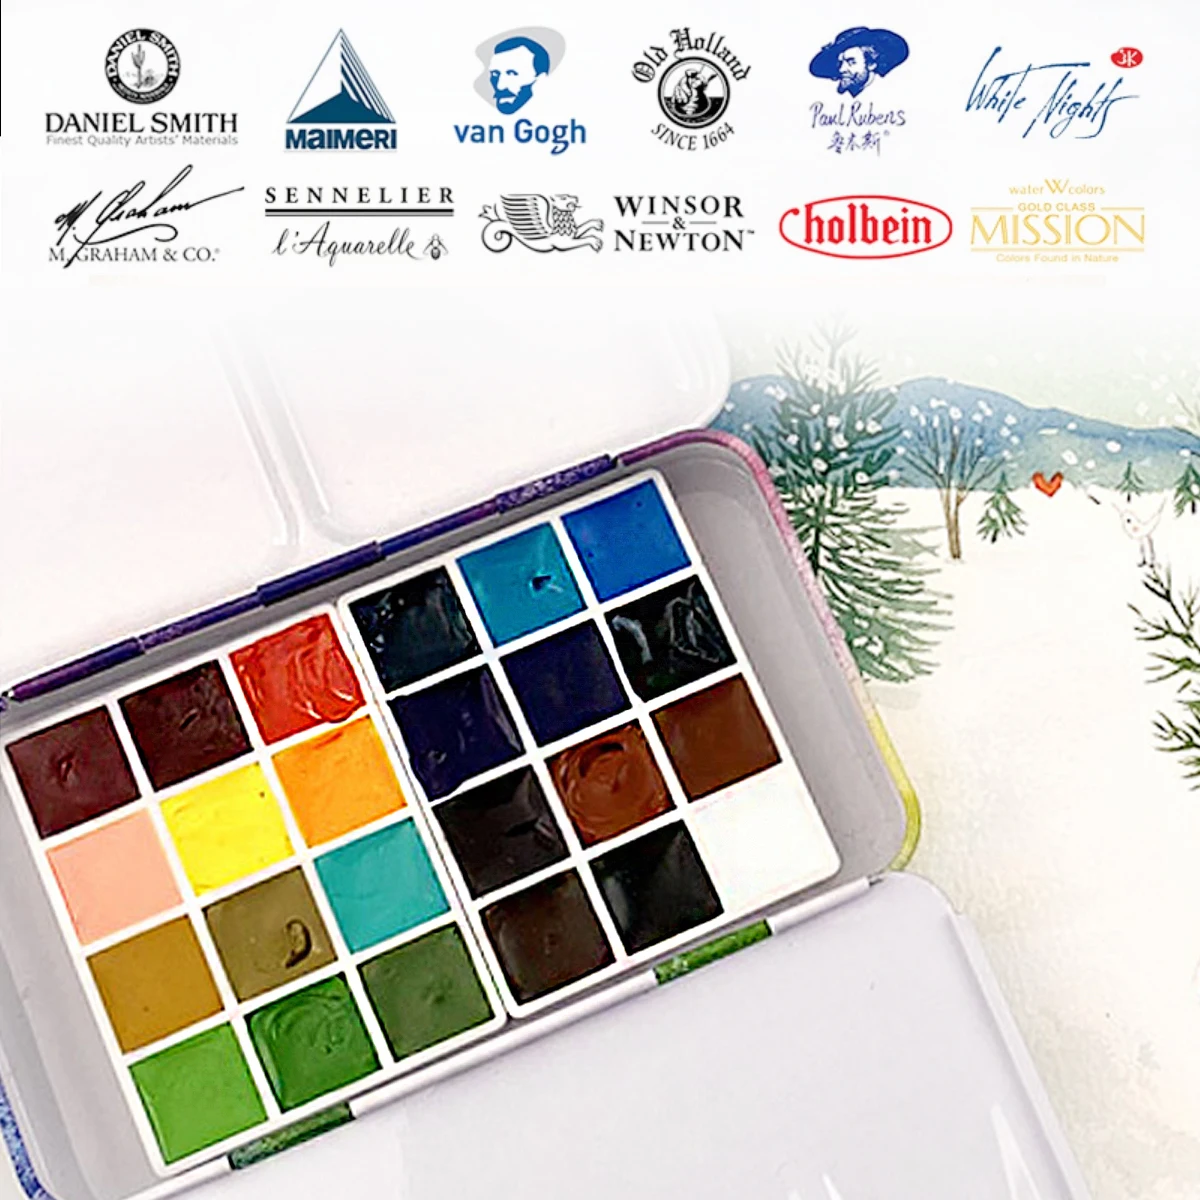 1mL 24 Colors Watercolor Paint Subpackage Portable Mini Set Pigment For White Nights Sennelier Cotman Mission Golden